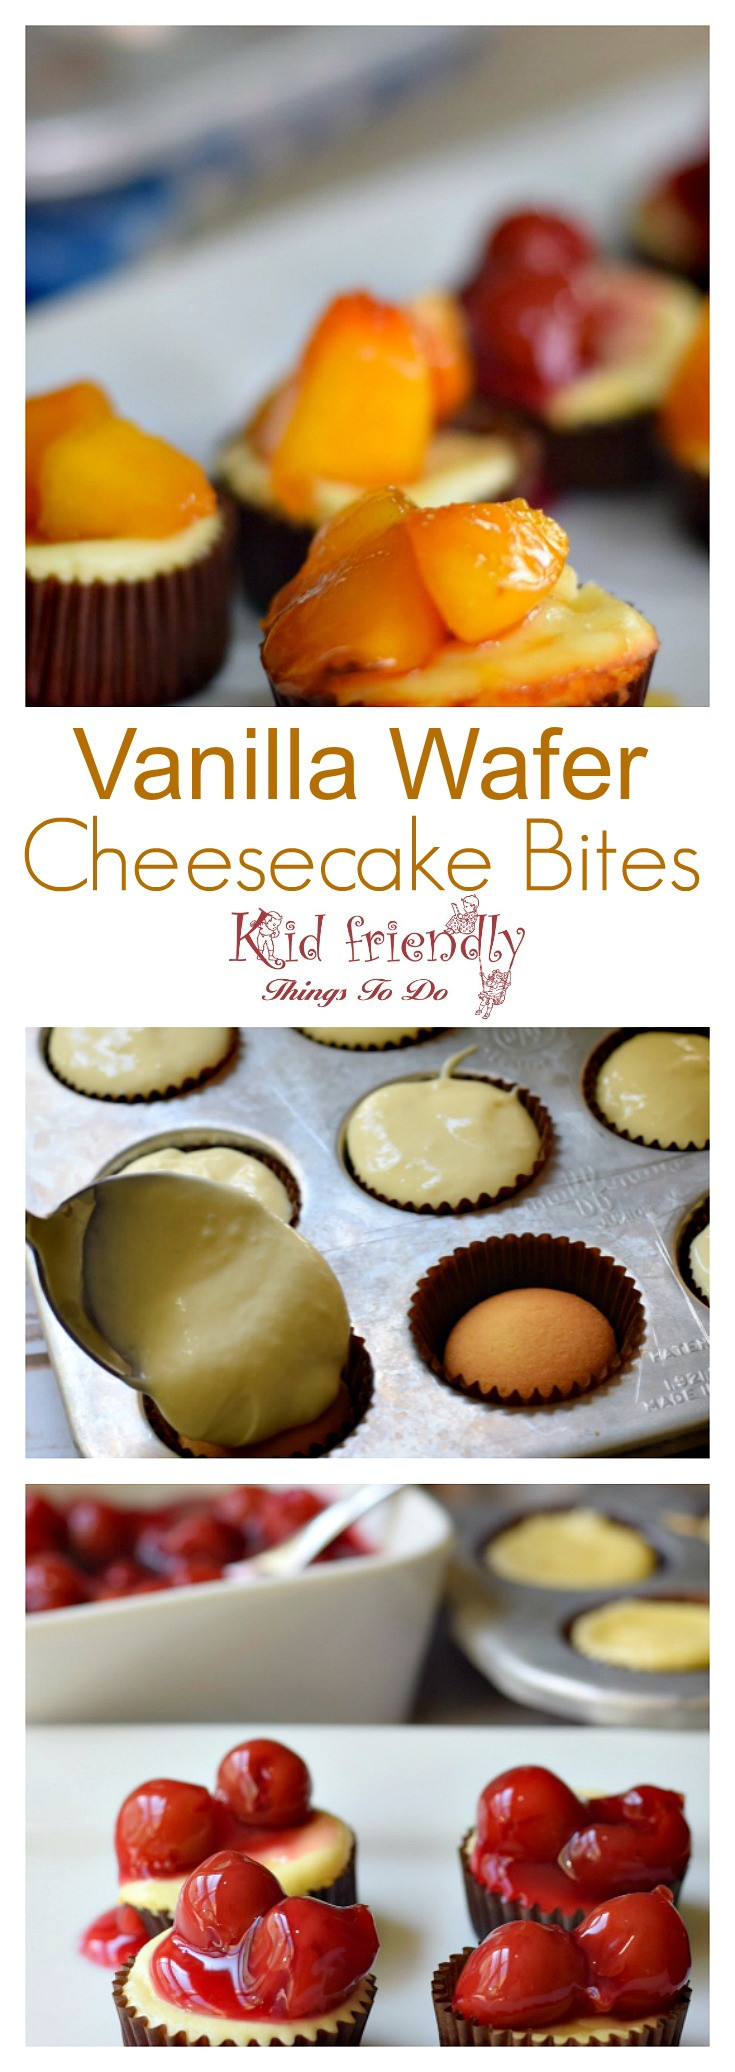 Vanilla Wafer Cheese Cake
 Easy Vanilla Wafer Cheesecake Bites Recipe